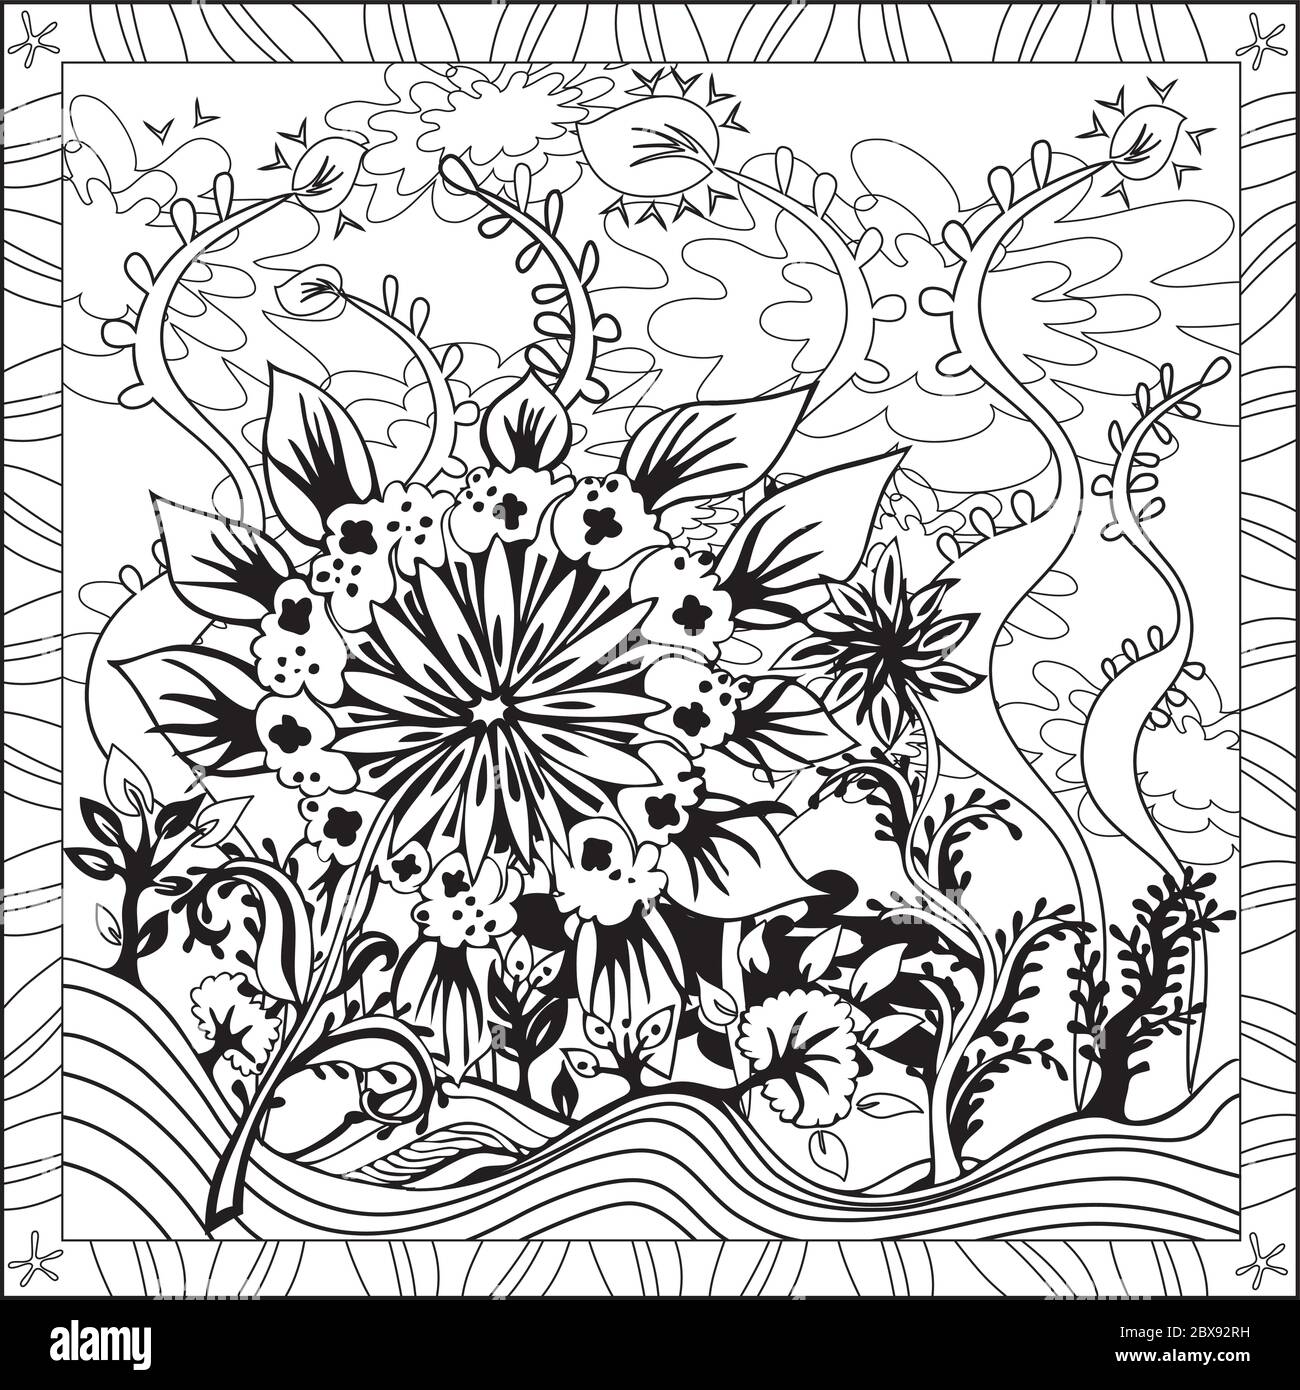 Malseite Illustration im quadratischen Format für Erwachsene, Floral Design Stock Vektor